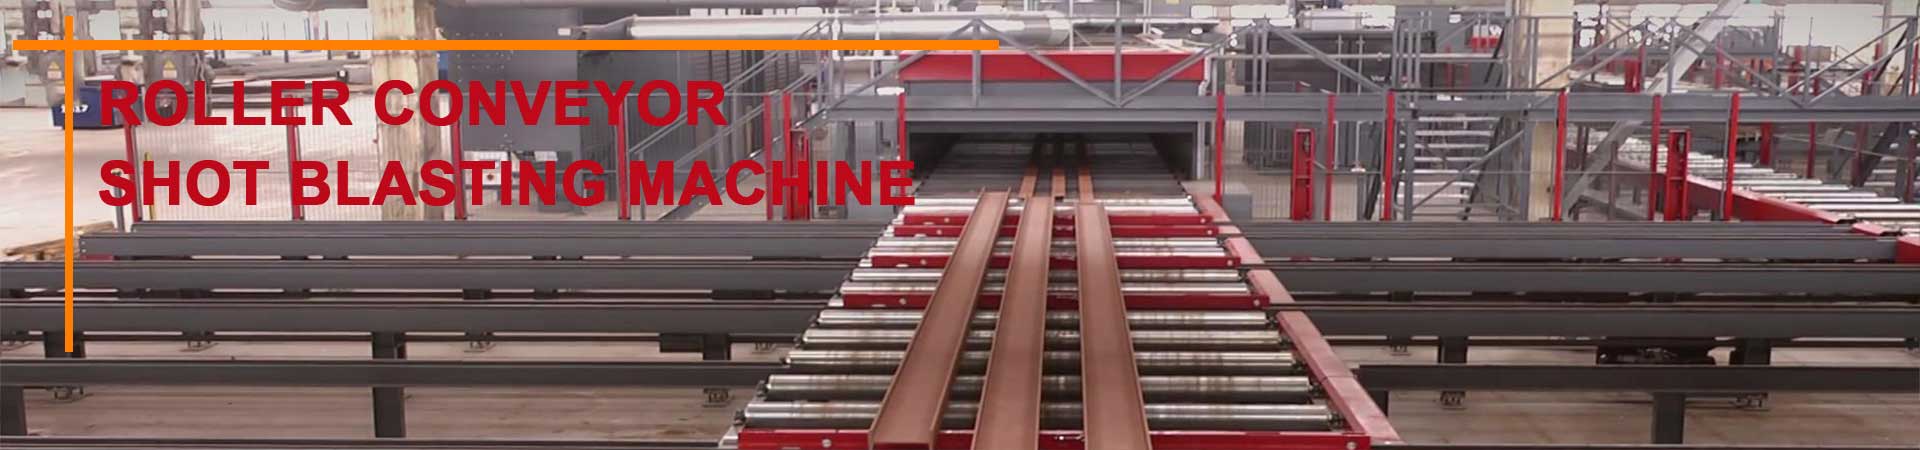 qinggong roller conveyor shot blasting machine